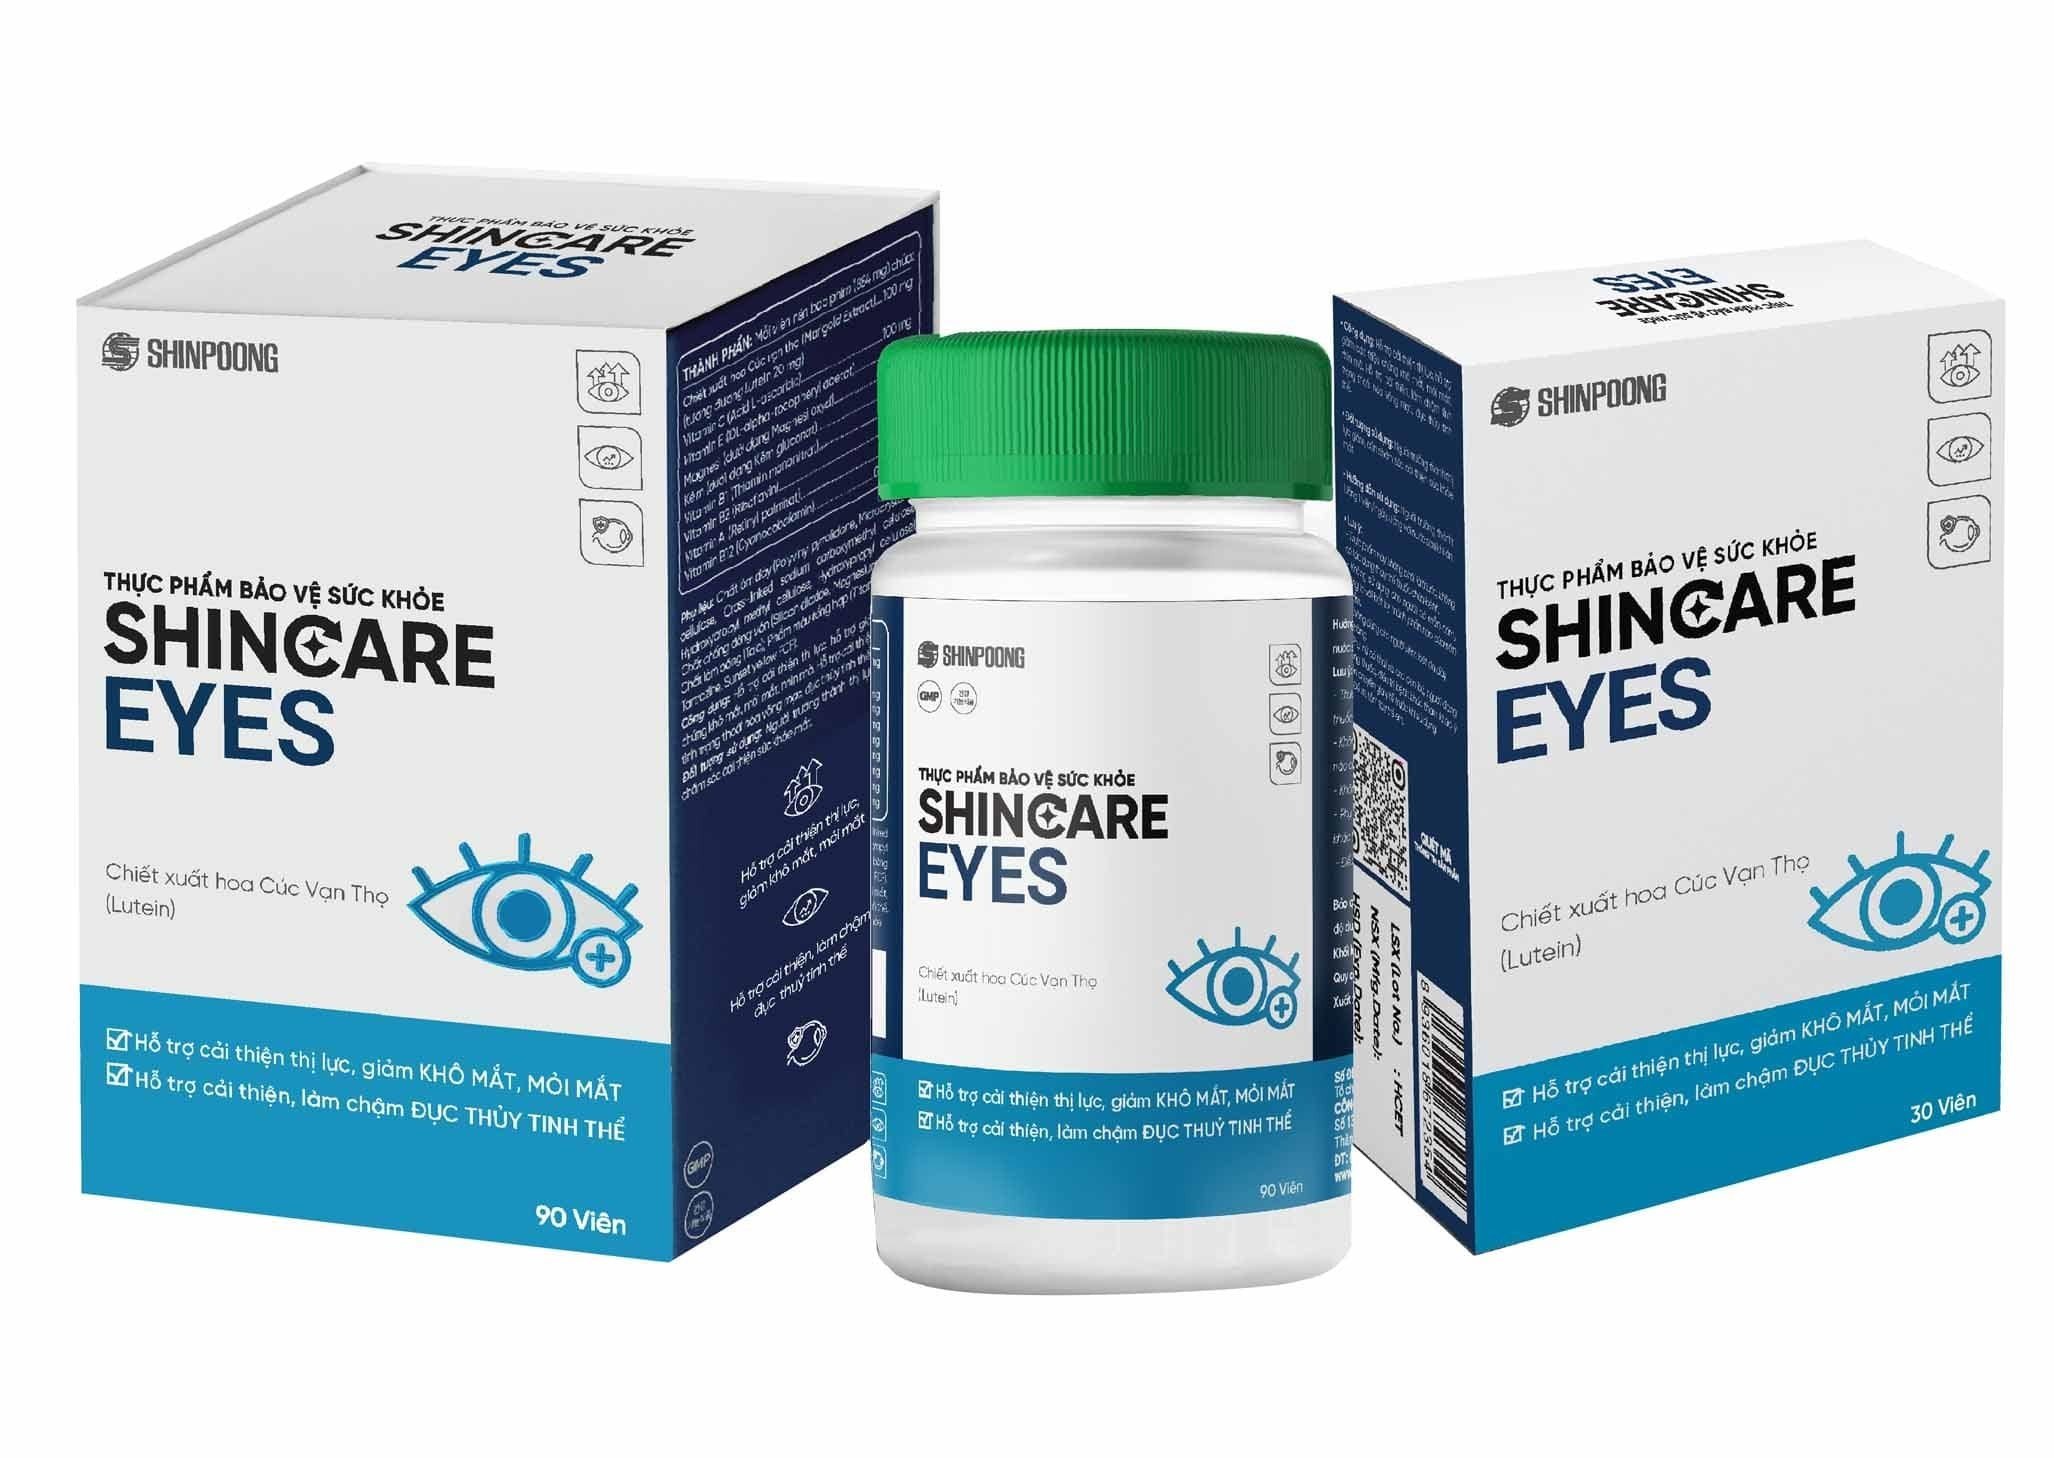 Viên Uống SHINCARE EYES - Hỗ trợ cải thiện thị lực. Hỗ trợ giảm các triệu chứng khô mắt, mỏi mắt, nhìn mờ - Hộp 90 viên.